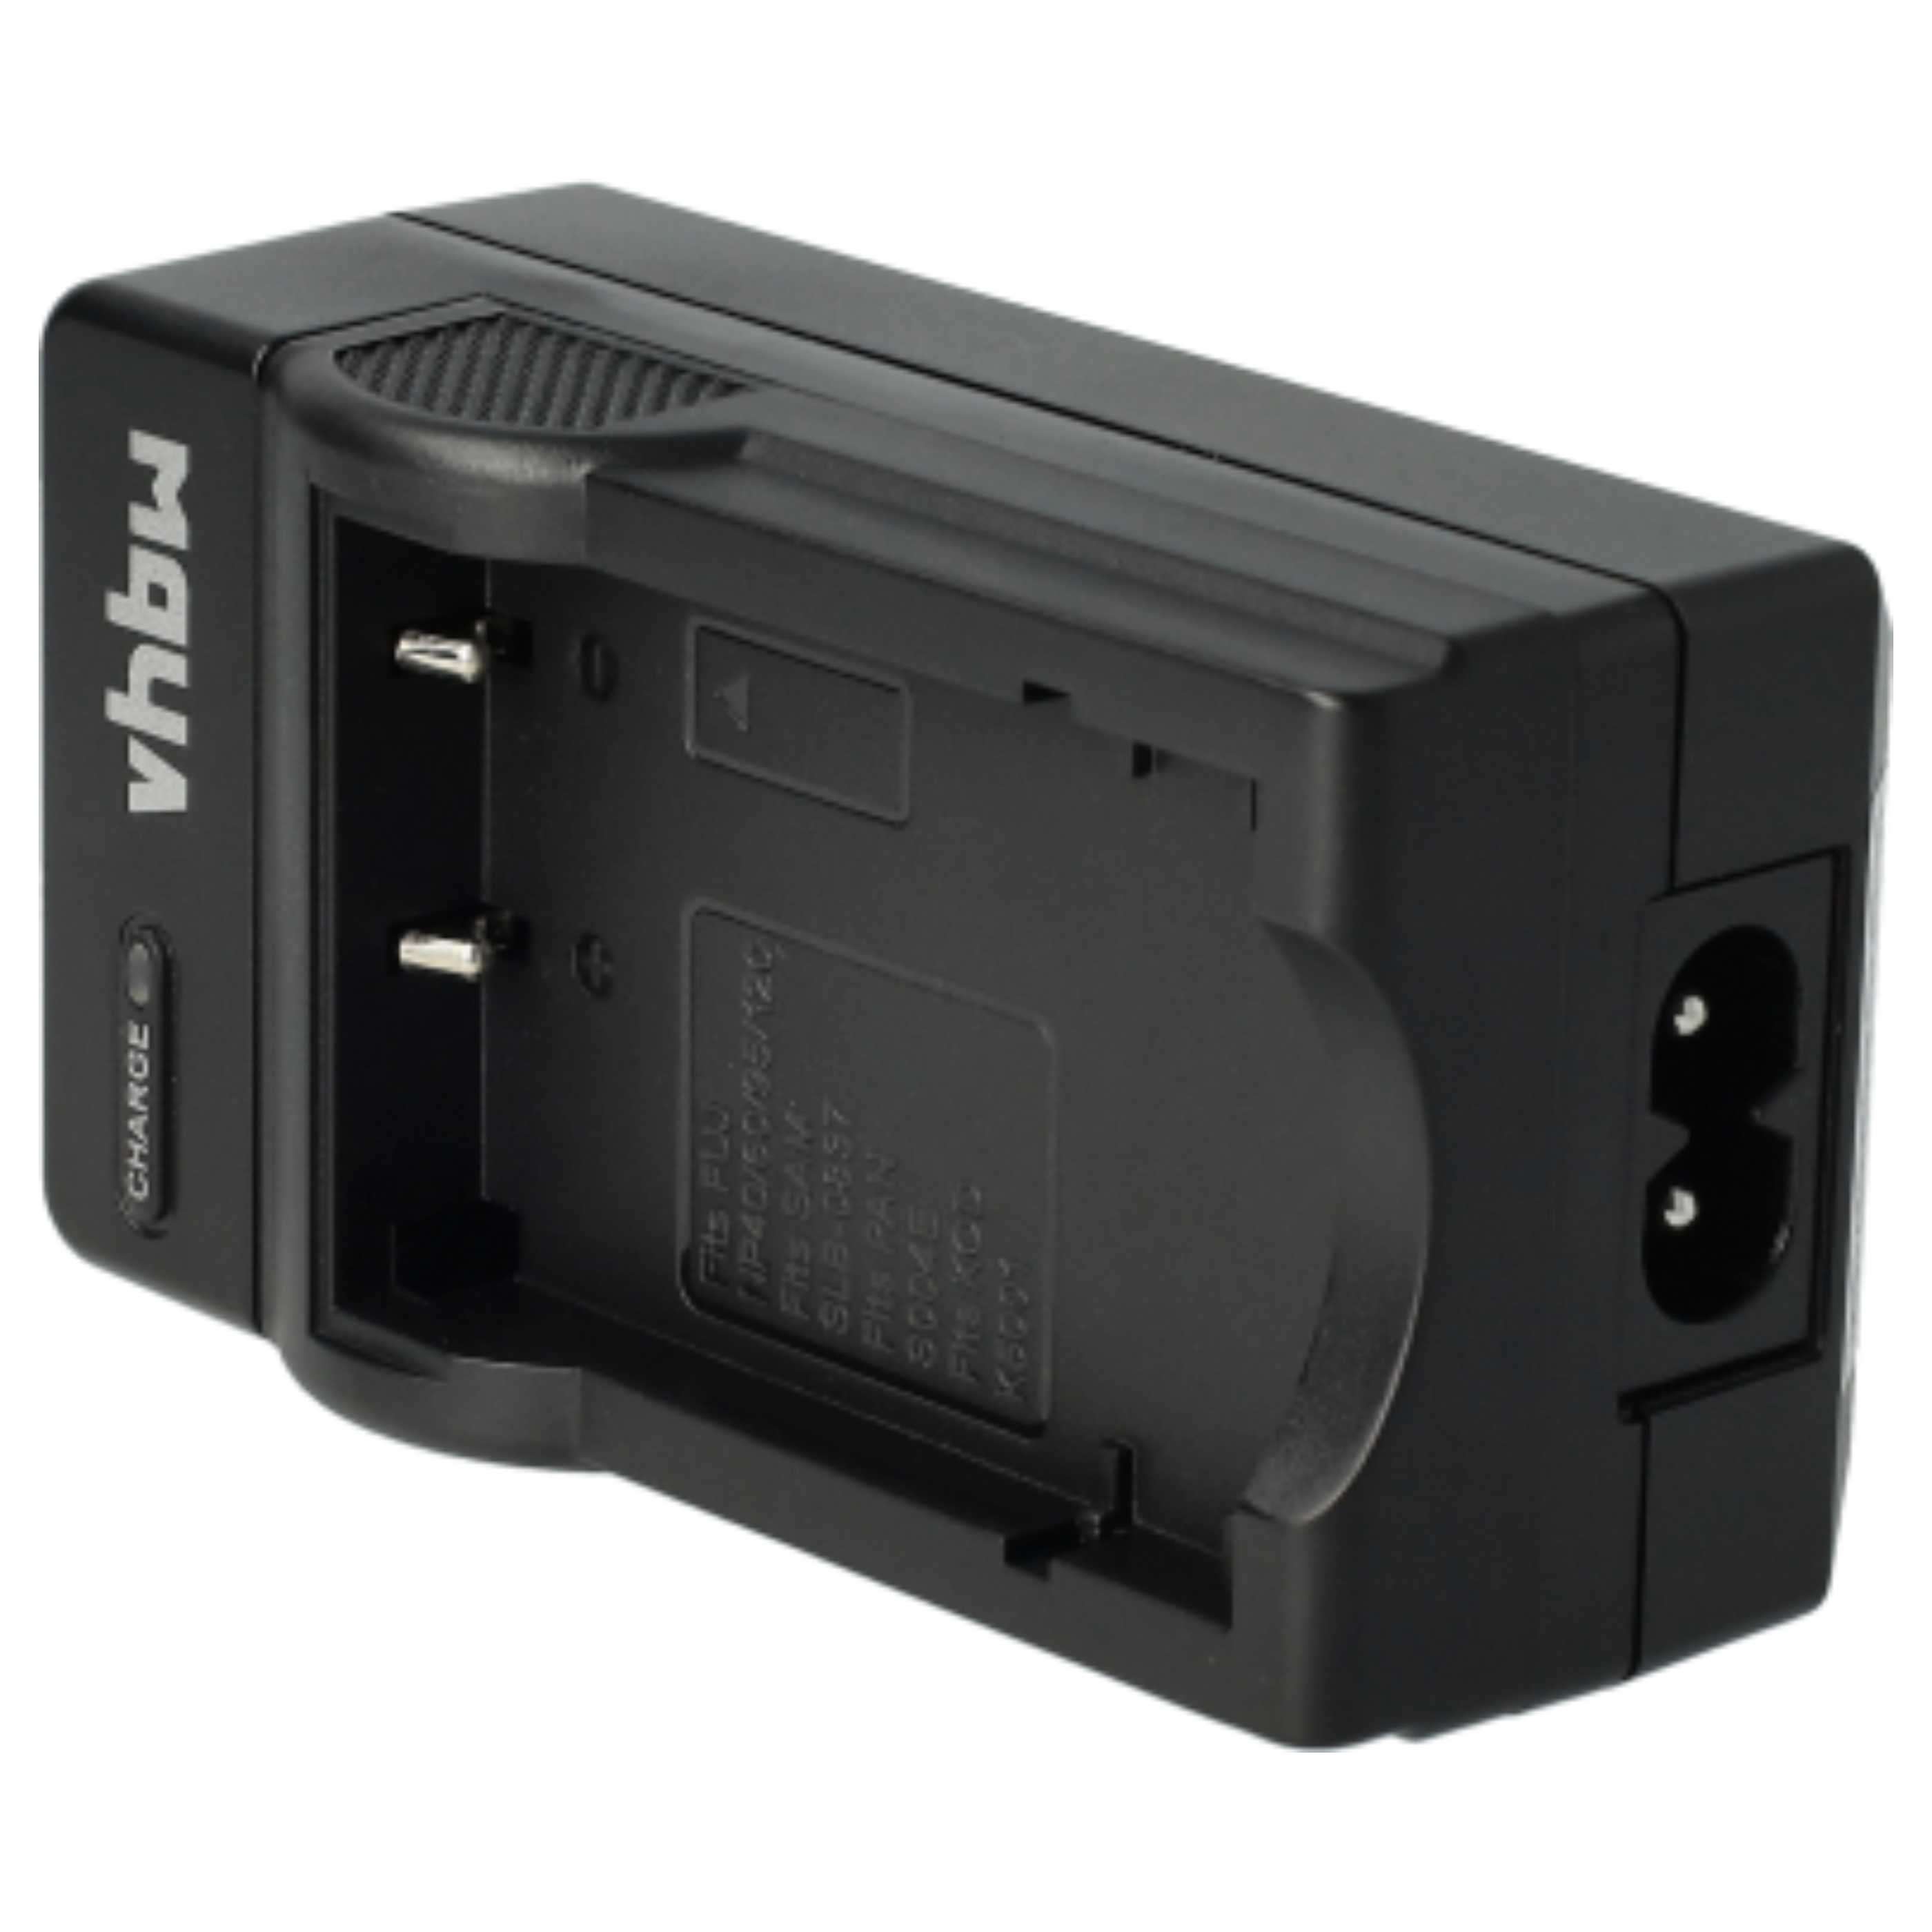 Akku Ladegerät passend für EasyShare C763 Kamera u.a. - 0,6 A, 4,2 V